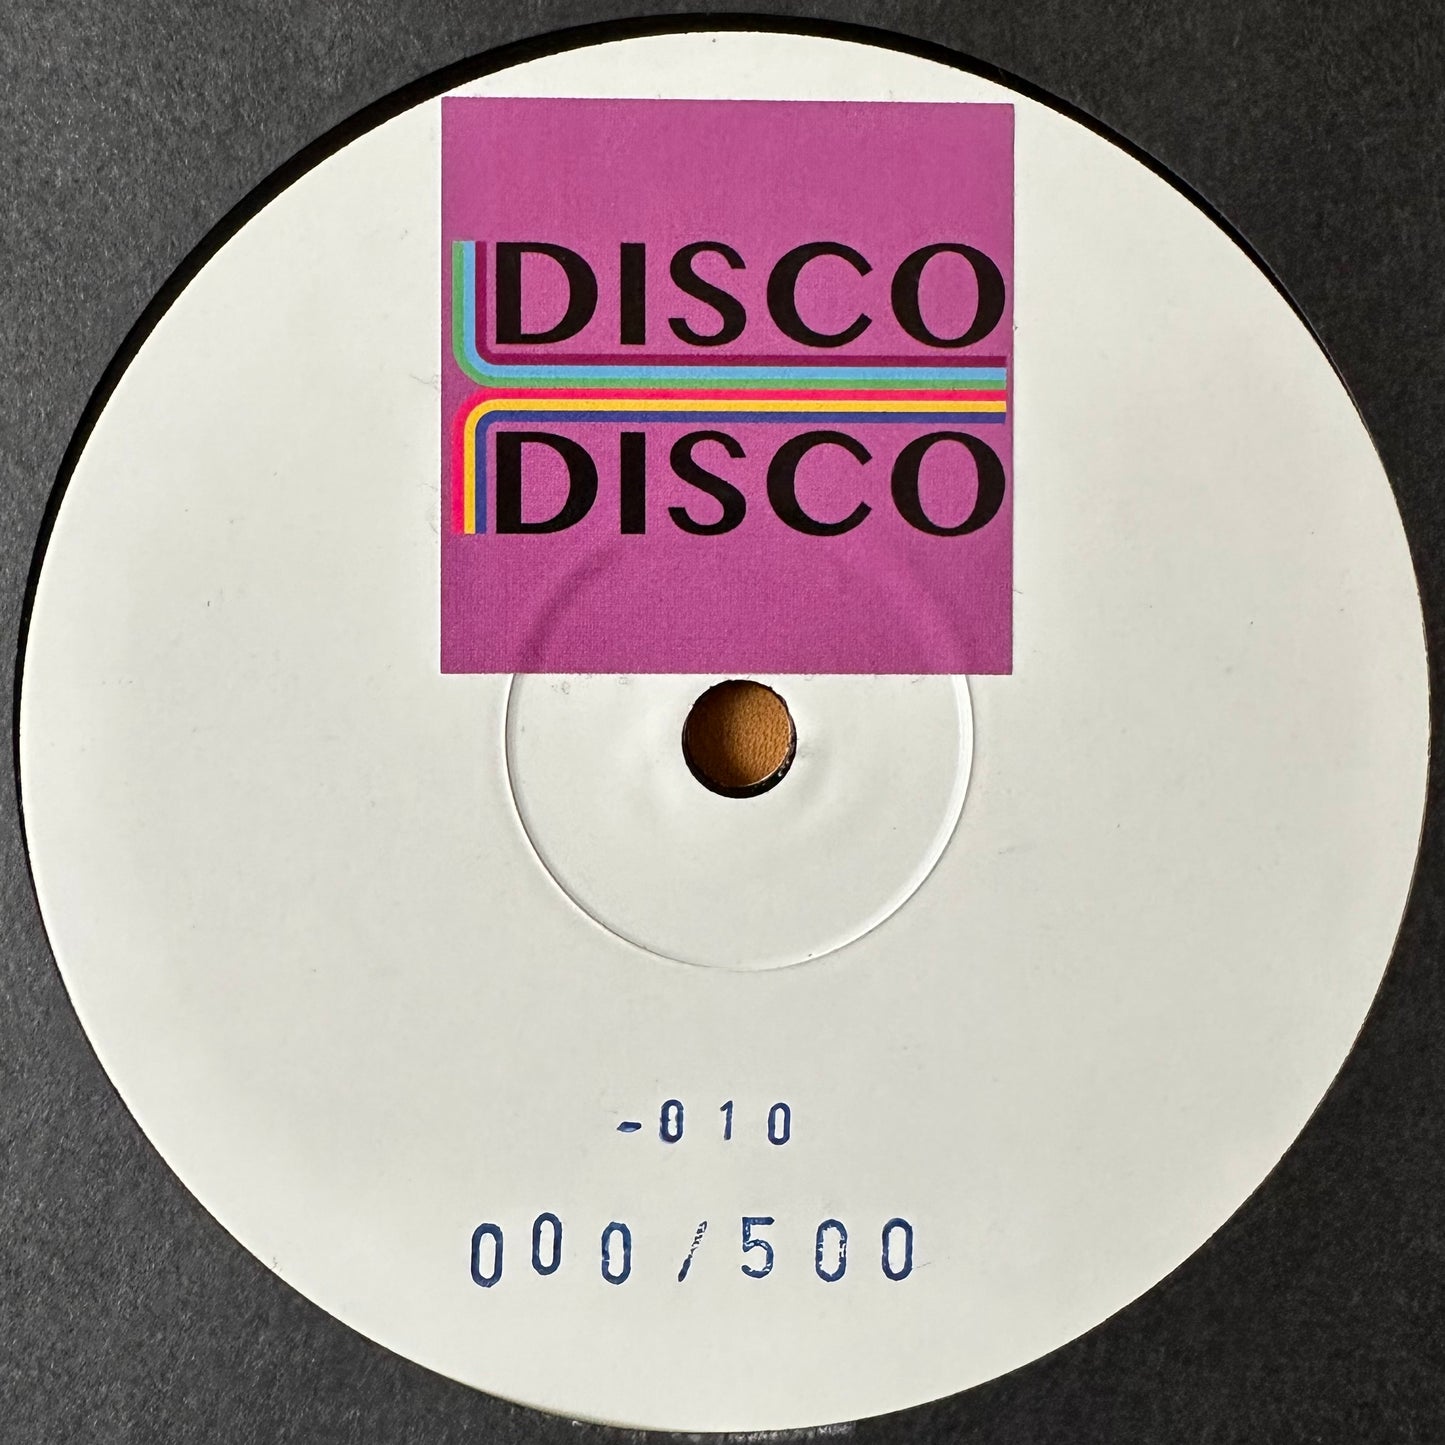 Delfonic - Get Ready EP - Disco Disco